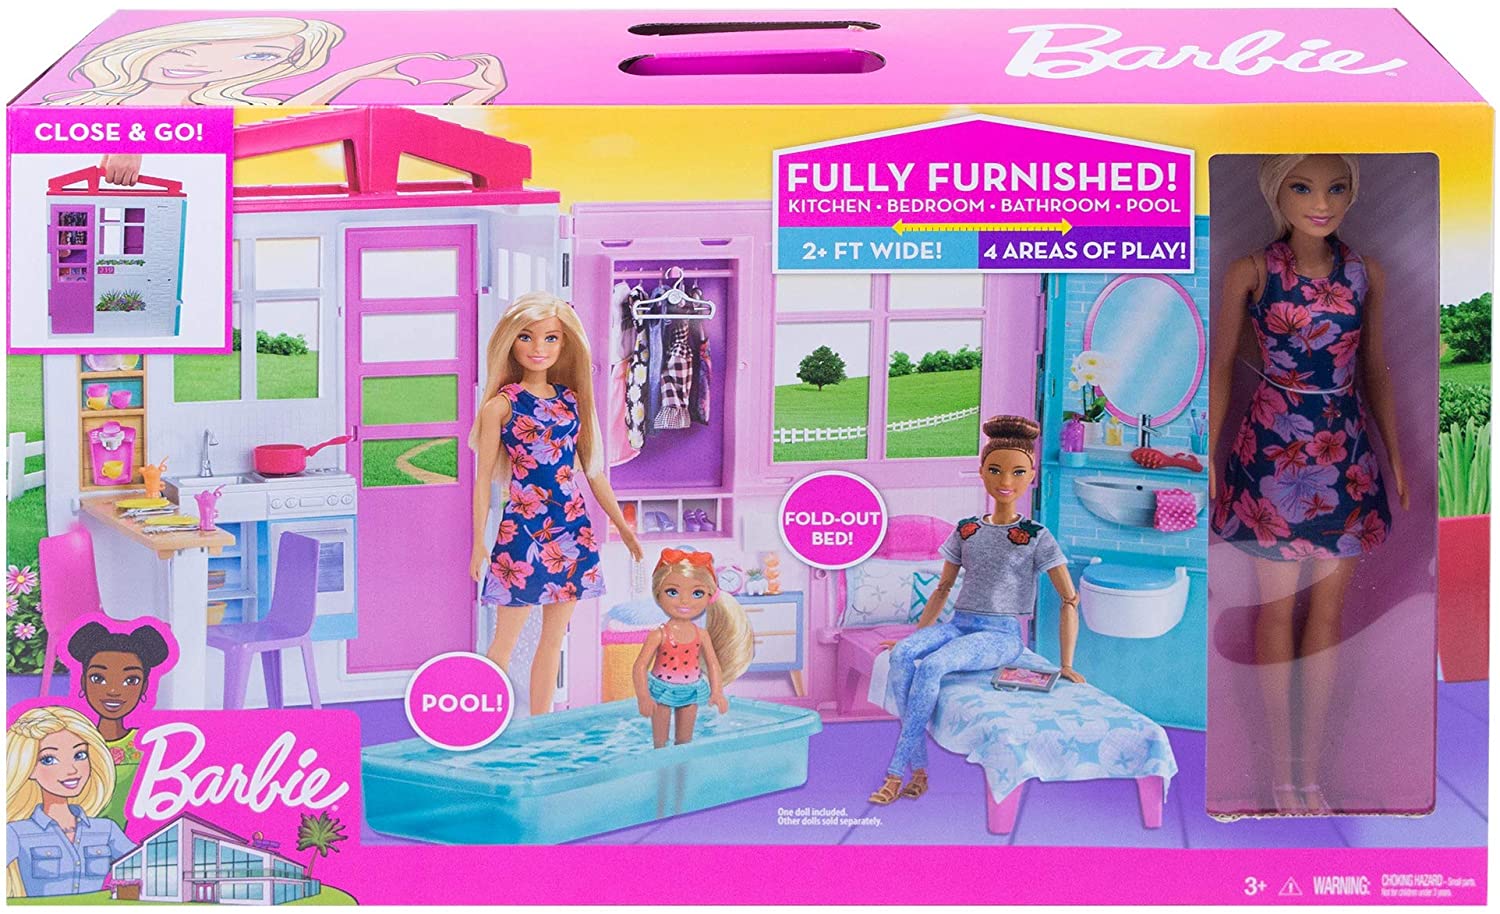 Jouet Mattel - FXG55 - Barbie + Sa Maison a Emporter - Maison de Poupee Repliable + Transformable - 1 Poupee 1